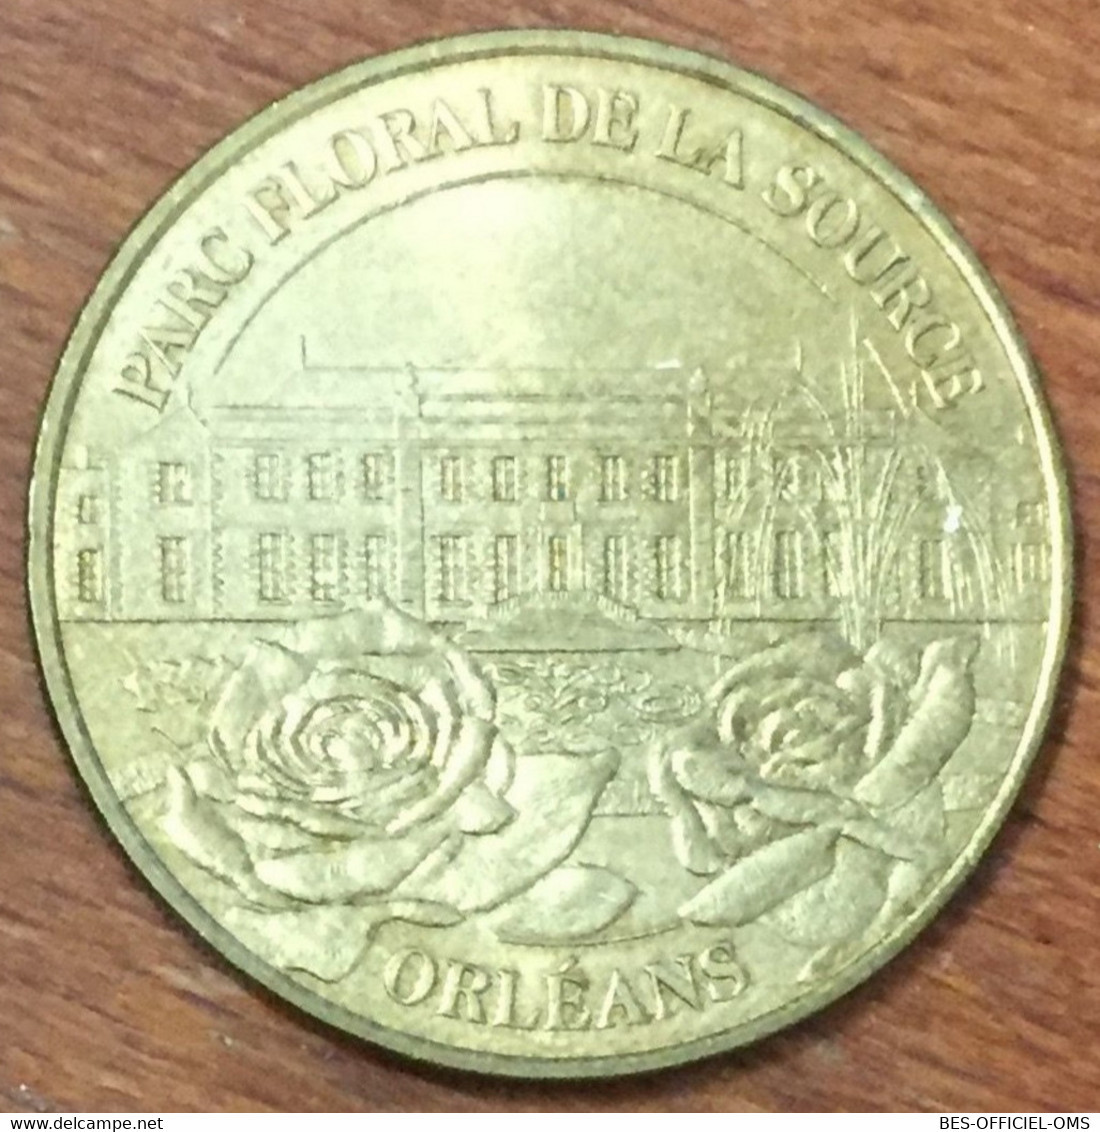 45 ORLÉANS PARC FLORAL DE LA SOURCE MDP 2003 MÉDAILLE MONNAIE DE PARIS JETON TOURISTIQUE MEDALS COINS TOKENS - 2003